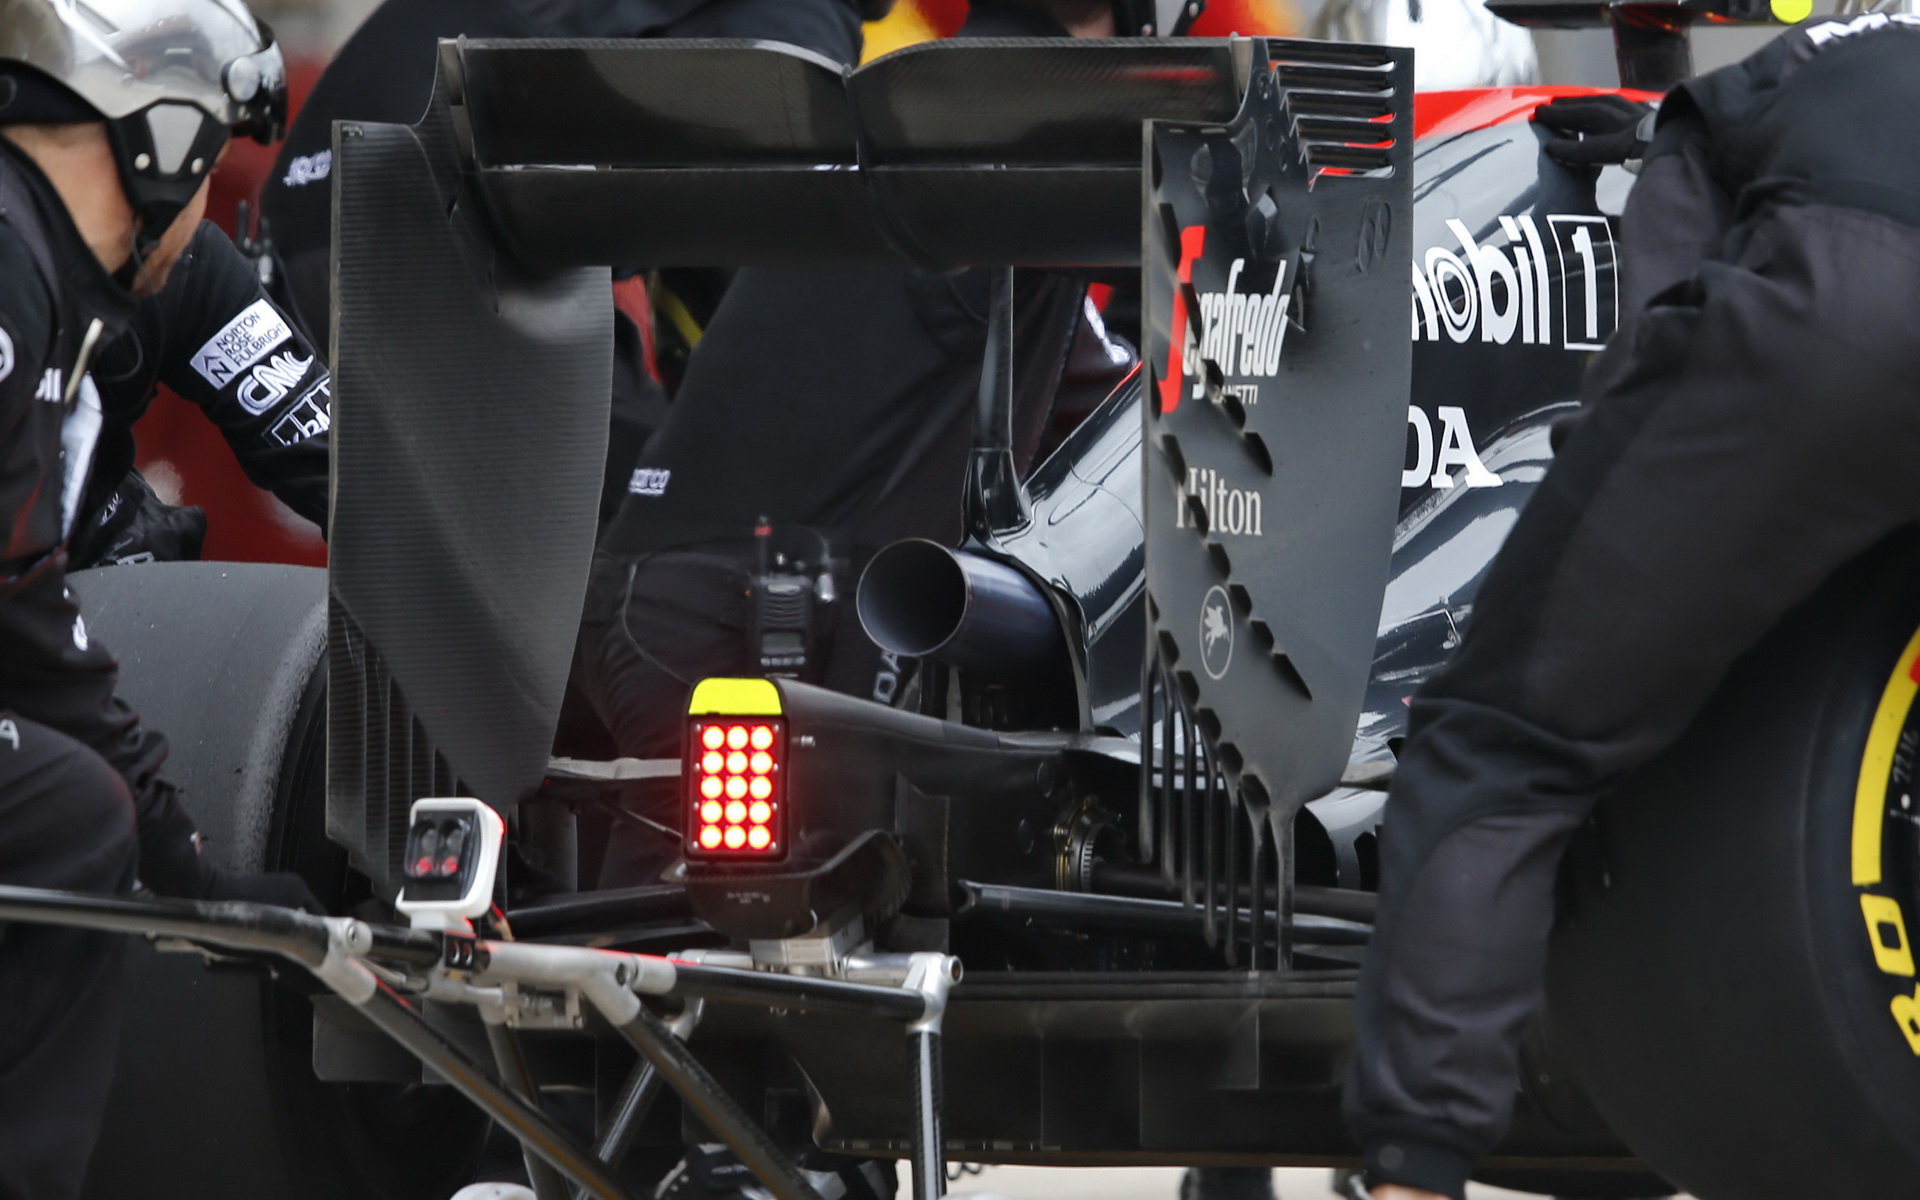 Výfuk, difuzor a zadní křídlo vozu McLaren MP4-30 Honda v Austinu